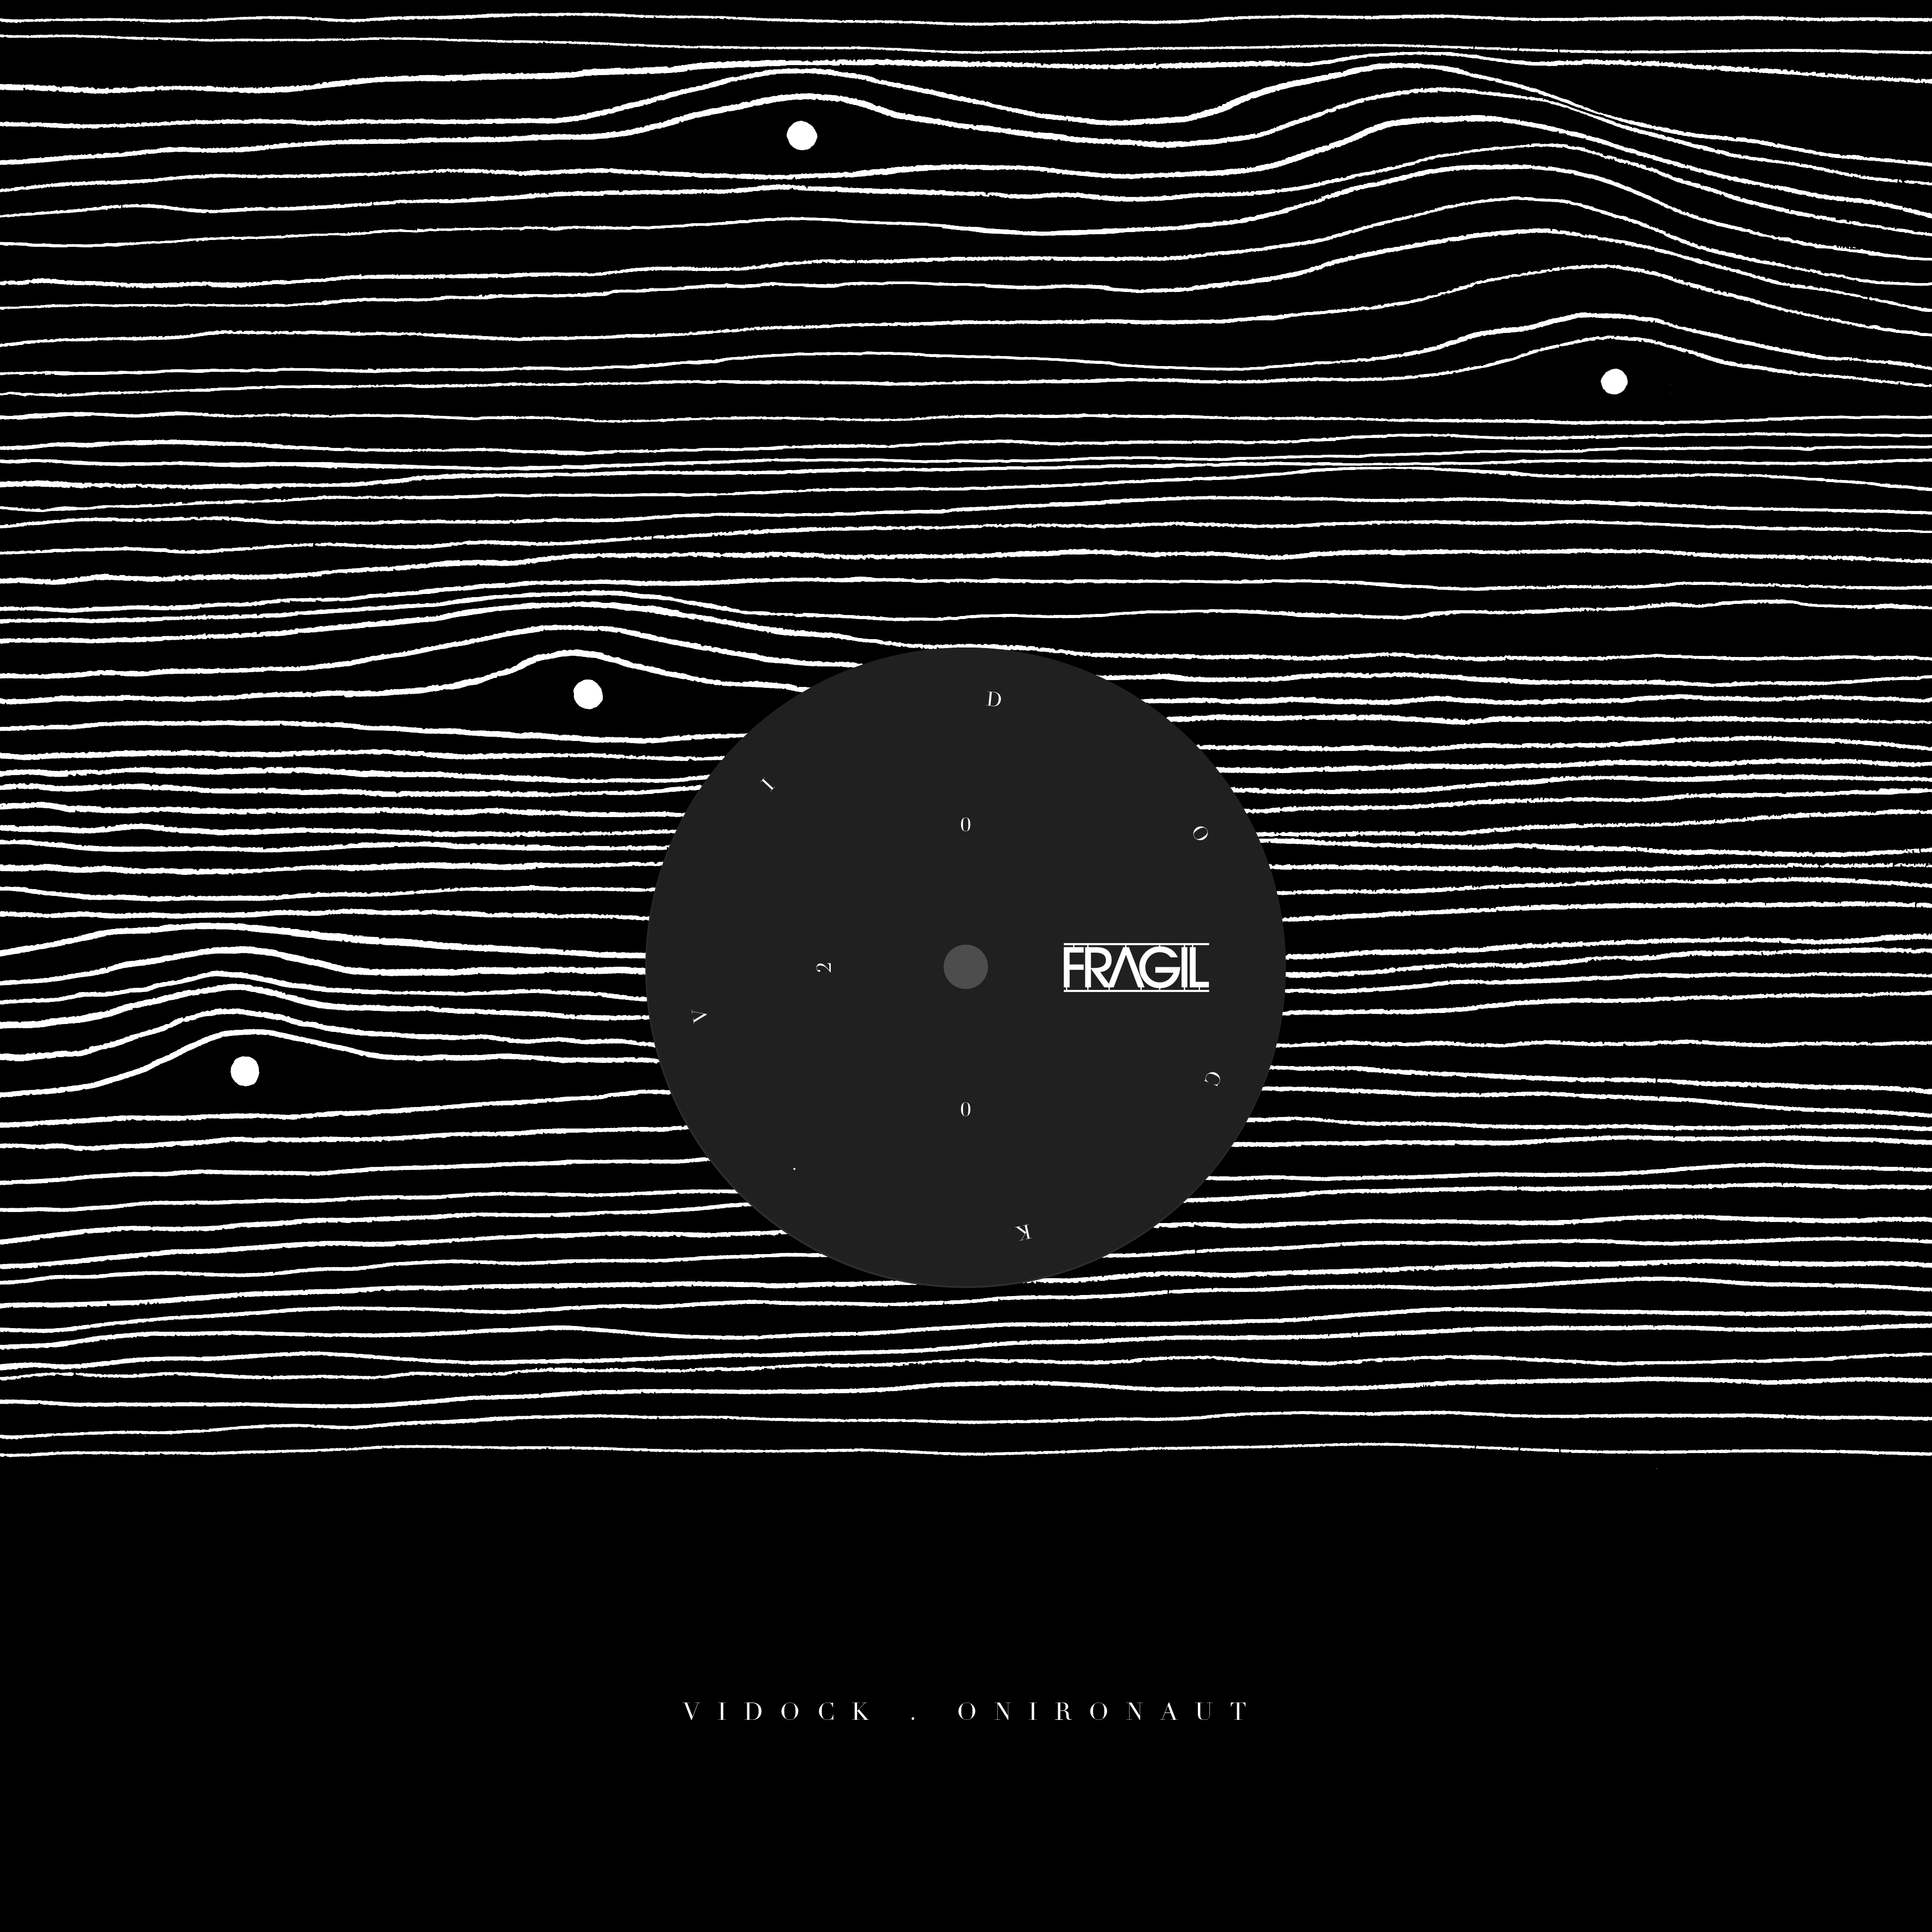 Vidock – Onironaut EP